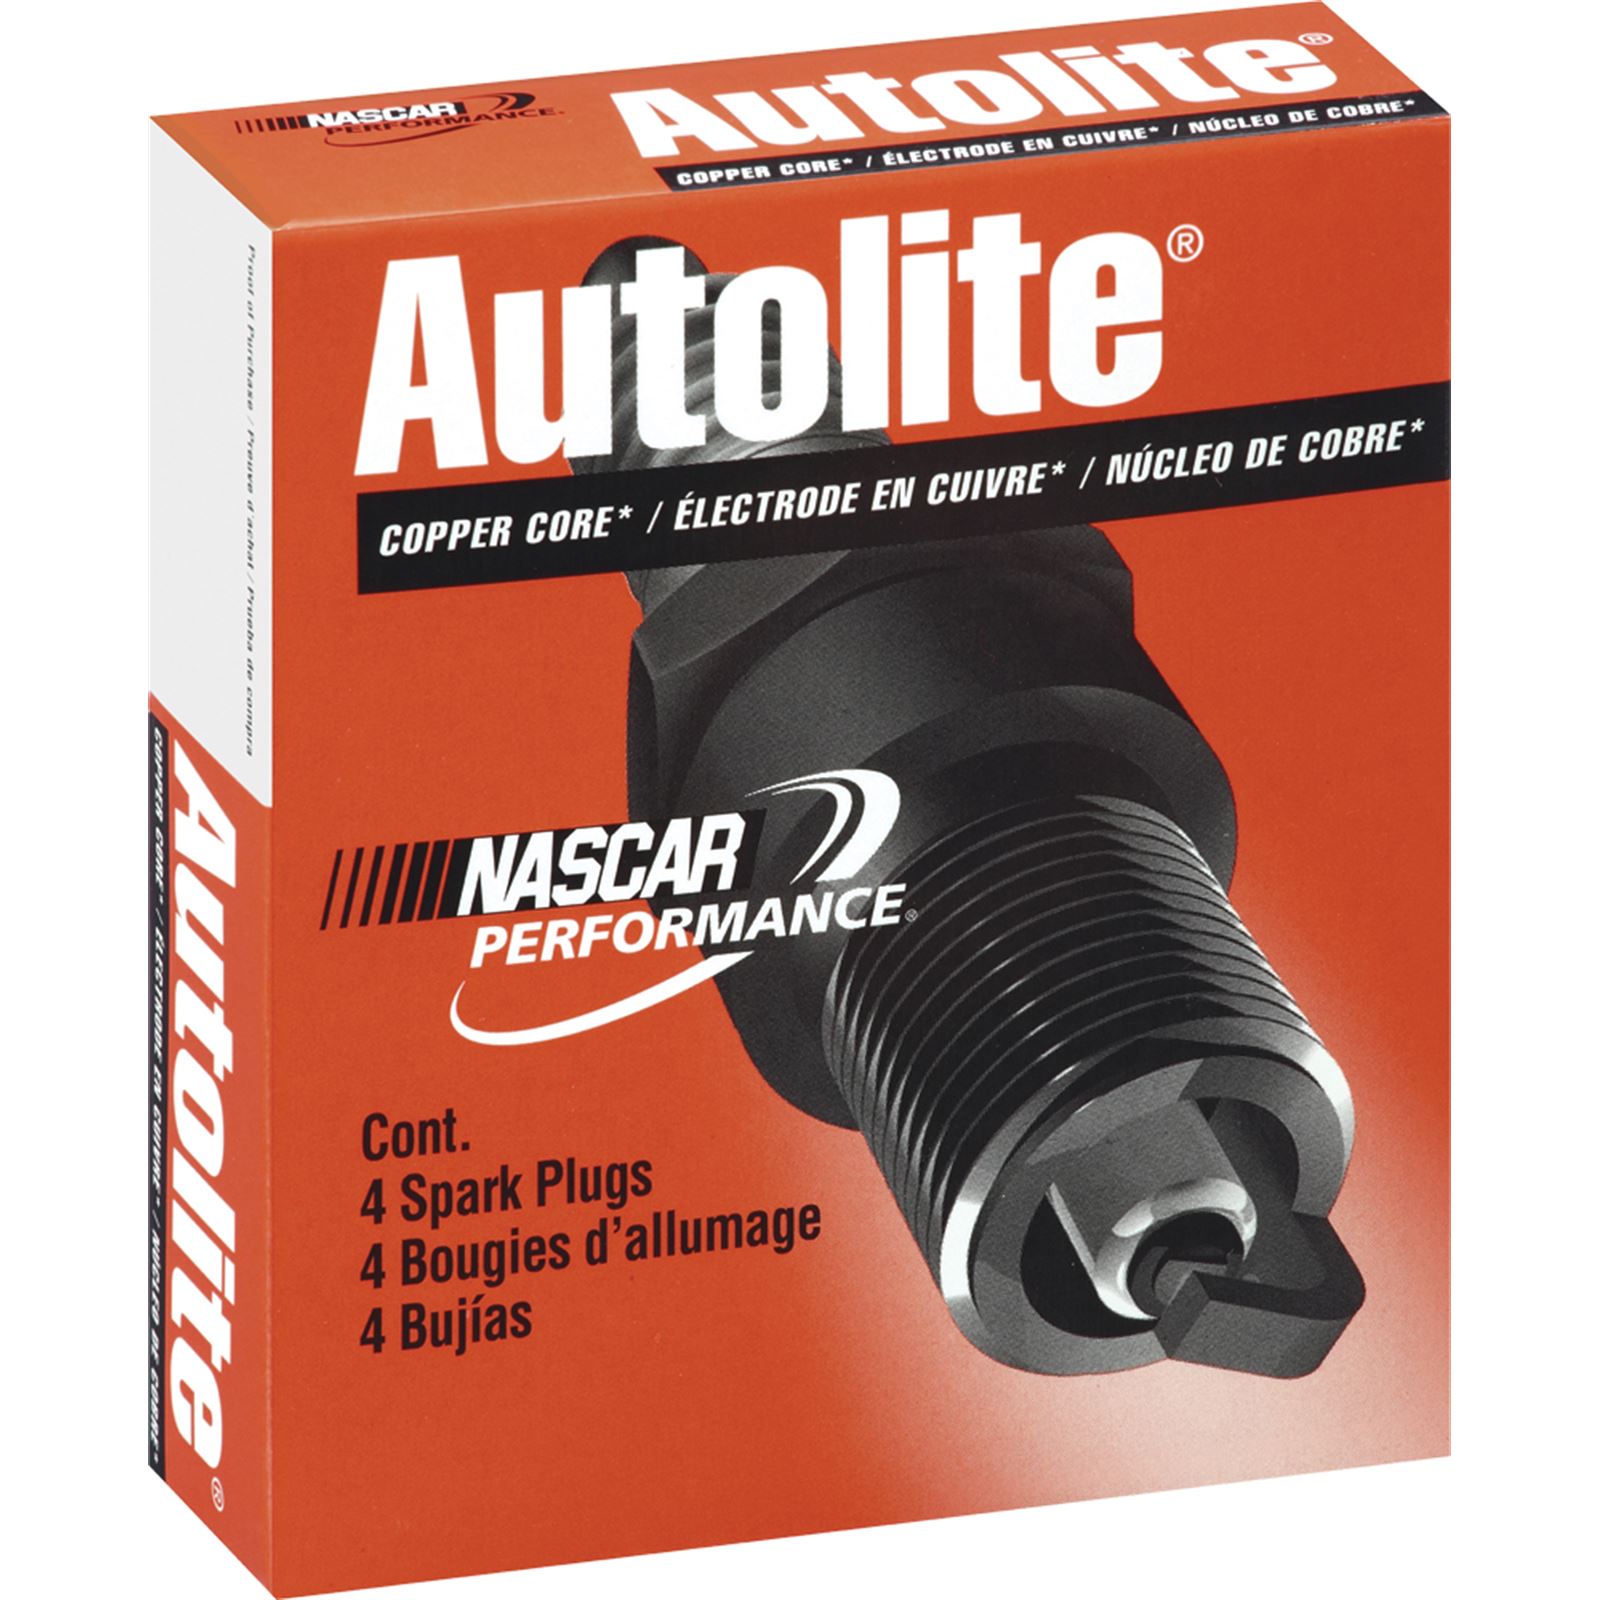 Autolite Copper Core Spark Plug